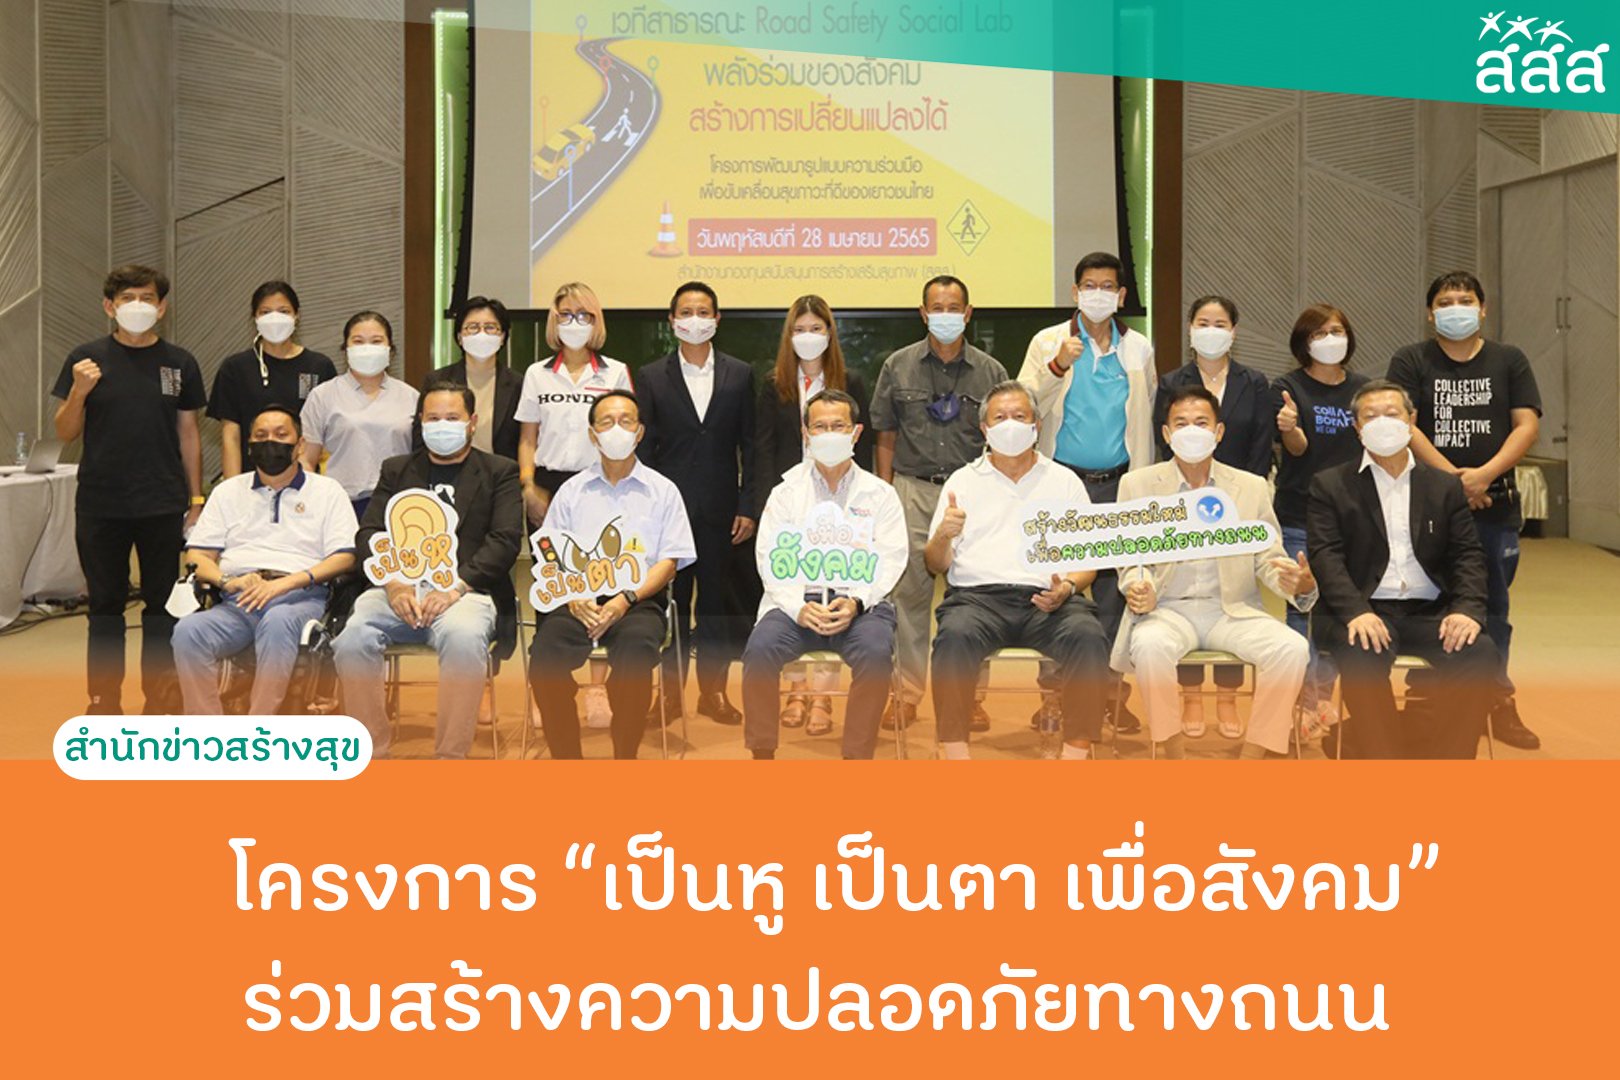 โครงการเป็นหูเป็นตาเพื่อสังคม ร่วมสร้างความปลอดภัยทางถนน thaihealth